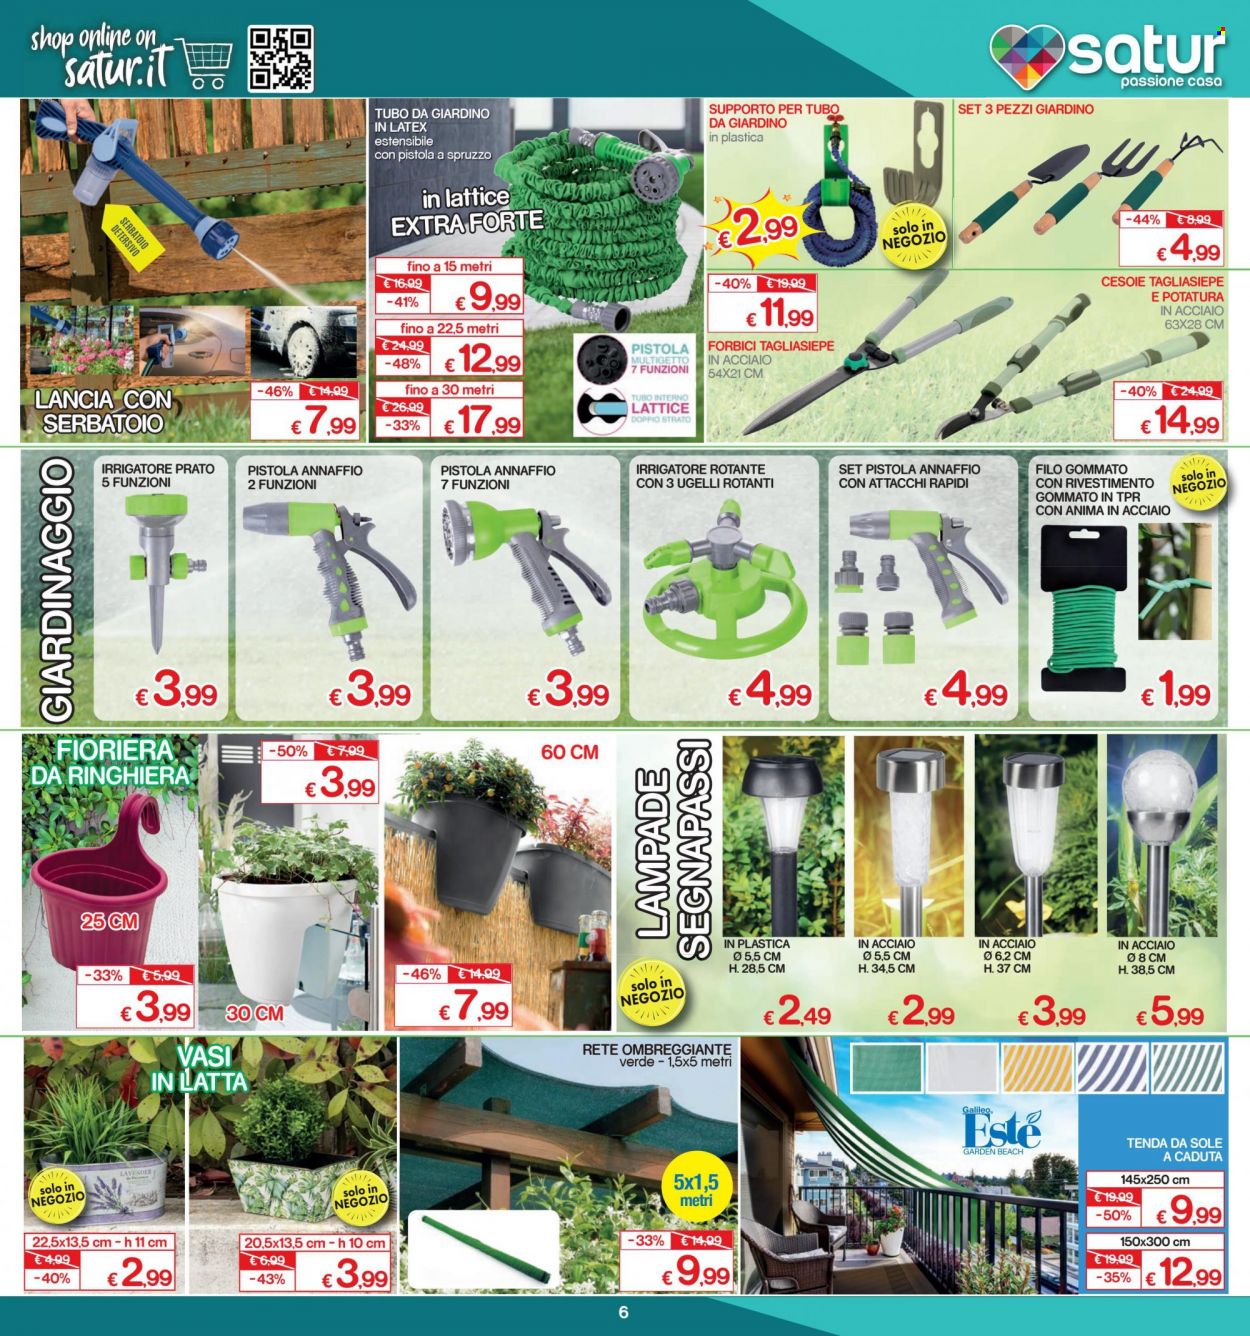 thumbnail - Volantino Satur - 29/4/2022 - 29/5/2022 - Prodotti in offerta - vaso, tenda, forbici, segnapasso spina, rete ombreggiante, fioriera, irrigatore. Pagina 6.